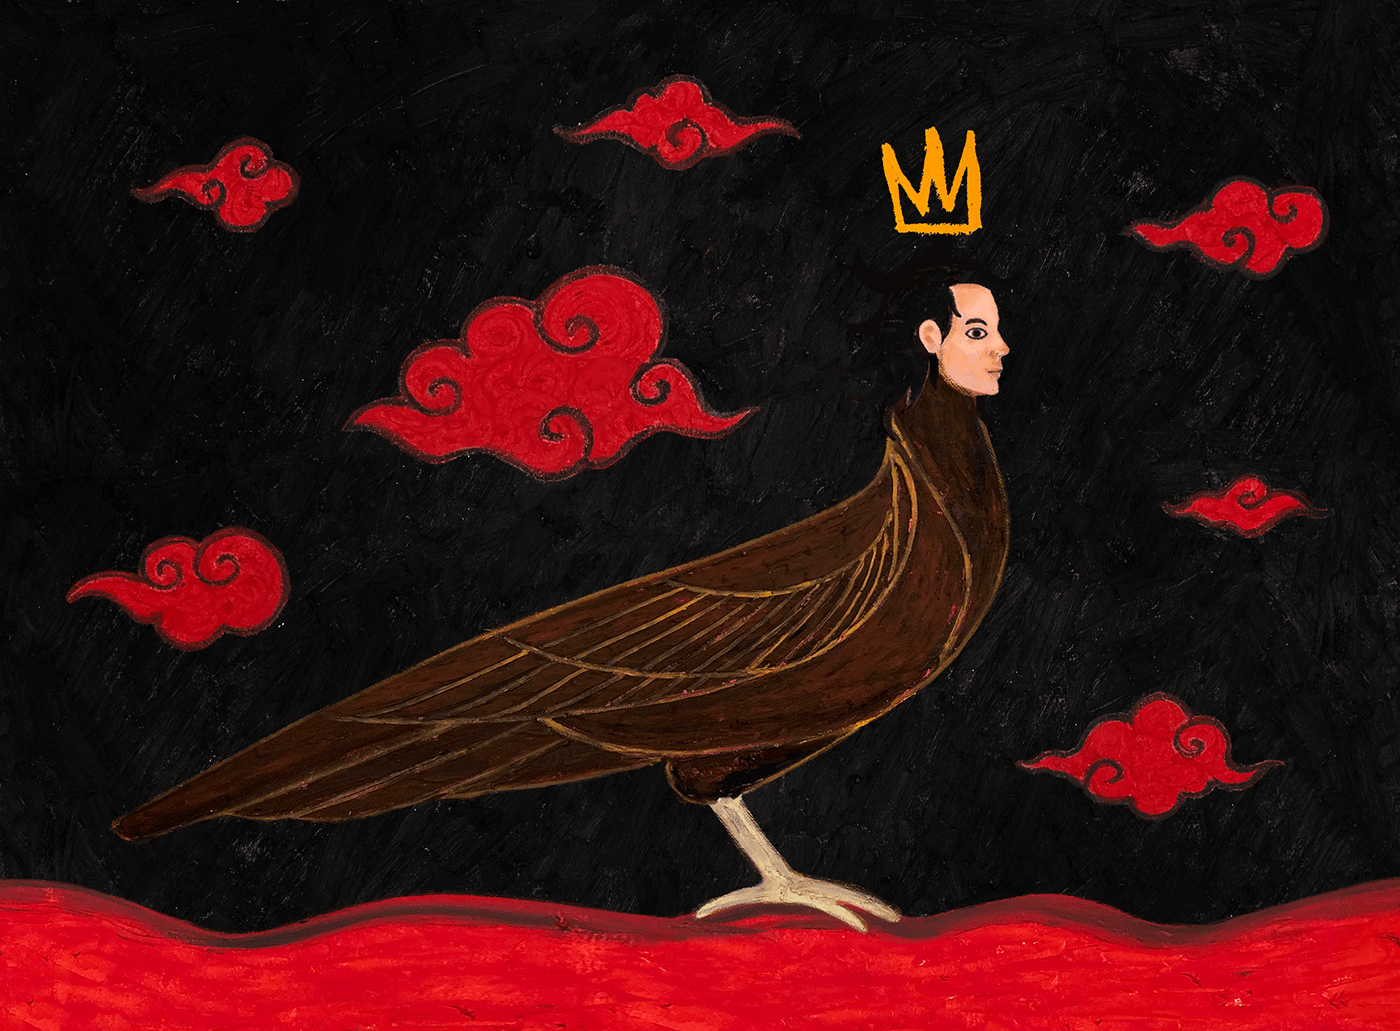 Bird chimera king.